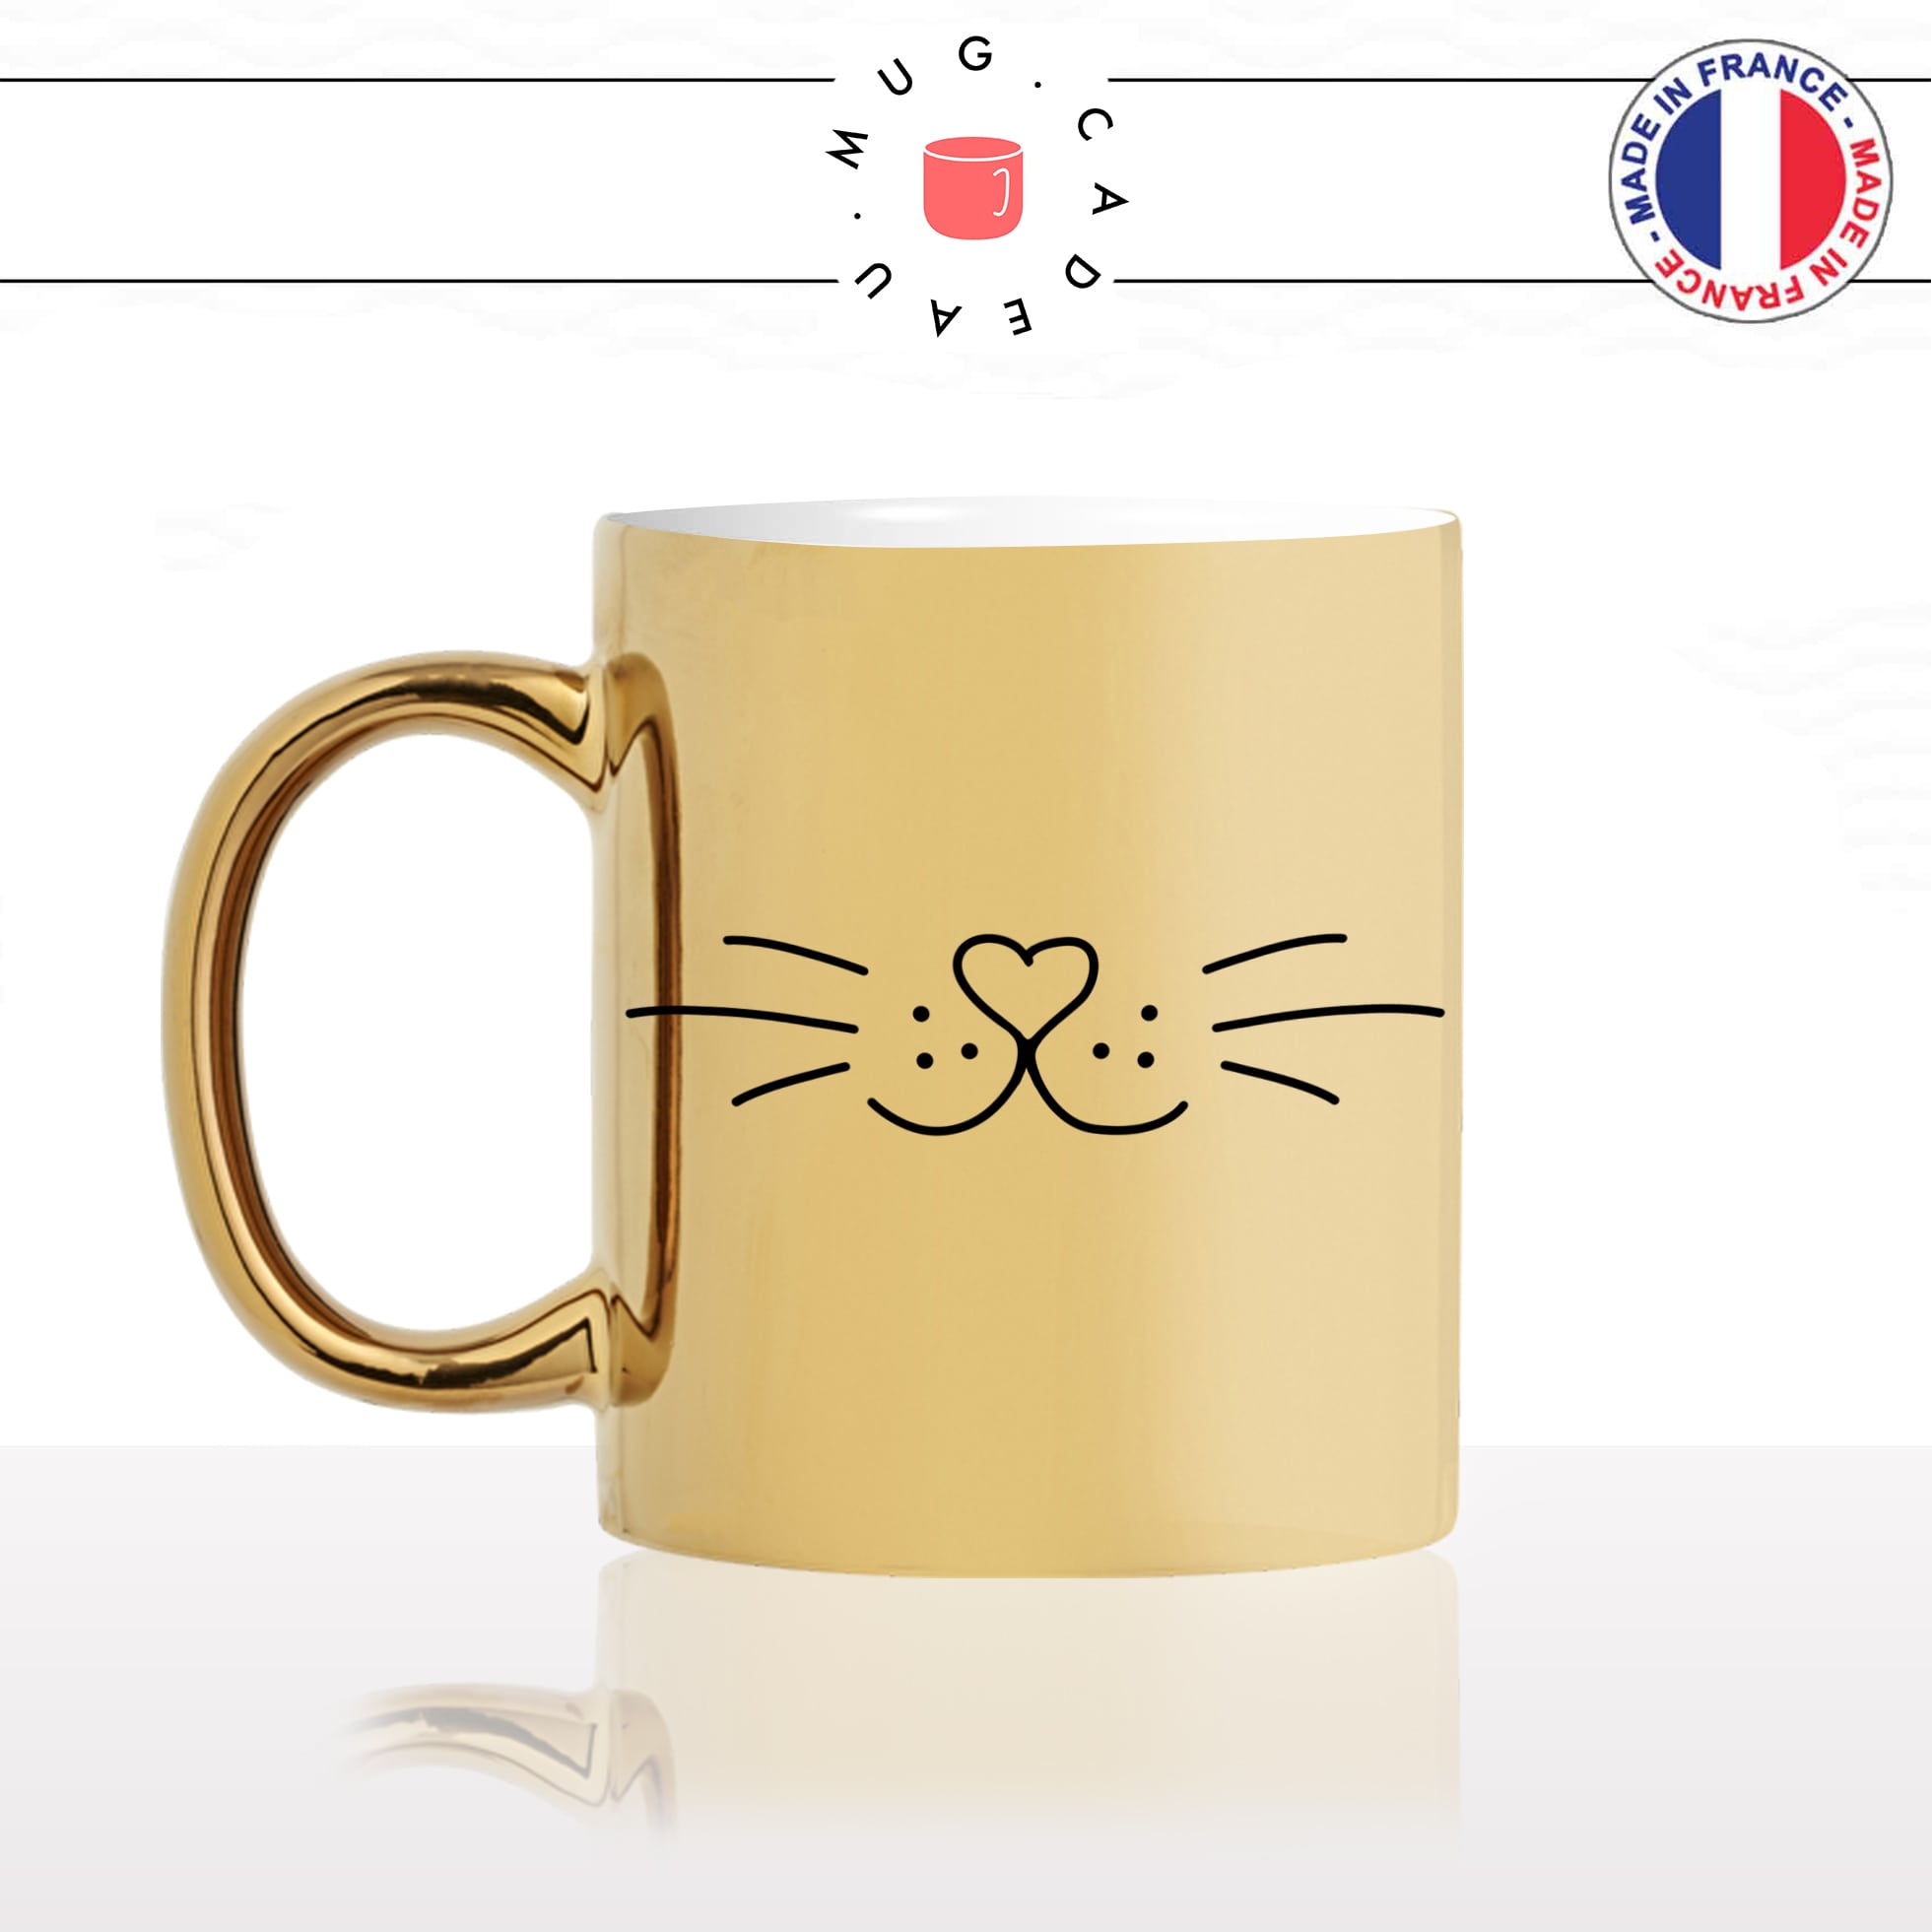 mug-tasse-or-doré-moustache-truffe-chats-animal-chaton-dessin-noir-fun-café-thé-idée-cadeau-original-personnalisable-gold-personnalisée-min